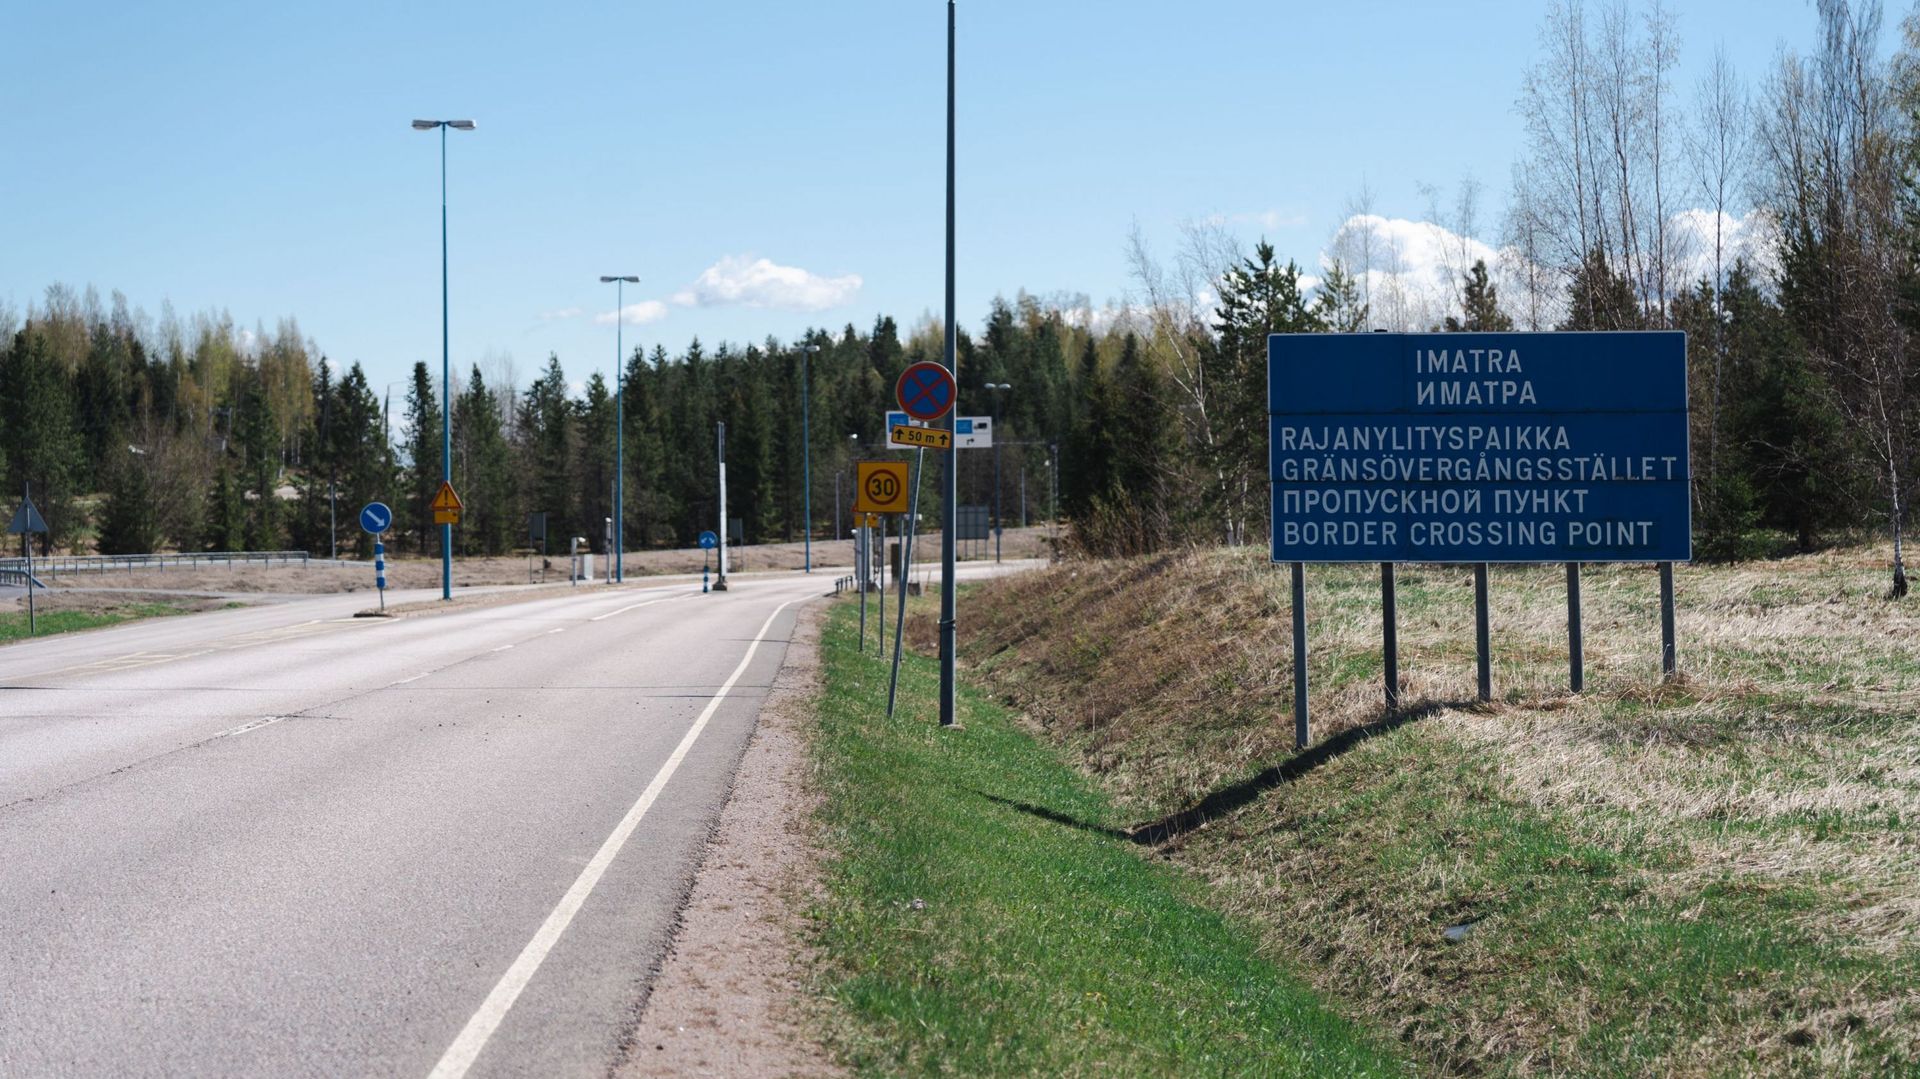 Photo prise à Imatra, à la frontière entre la Finlande et la Russie